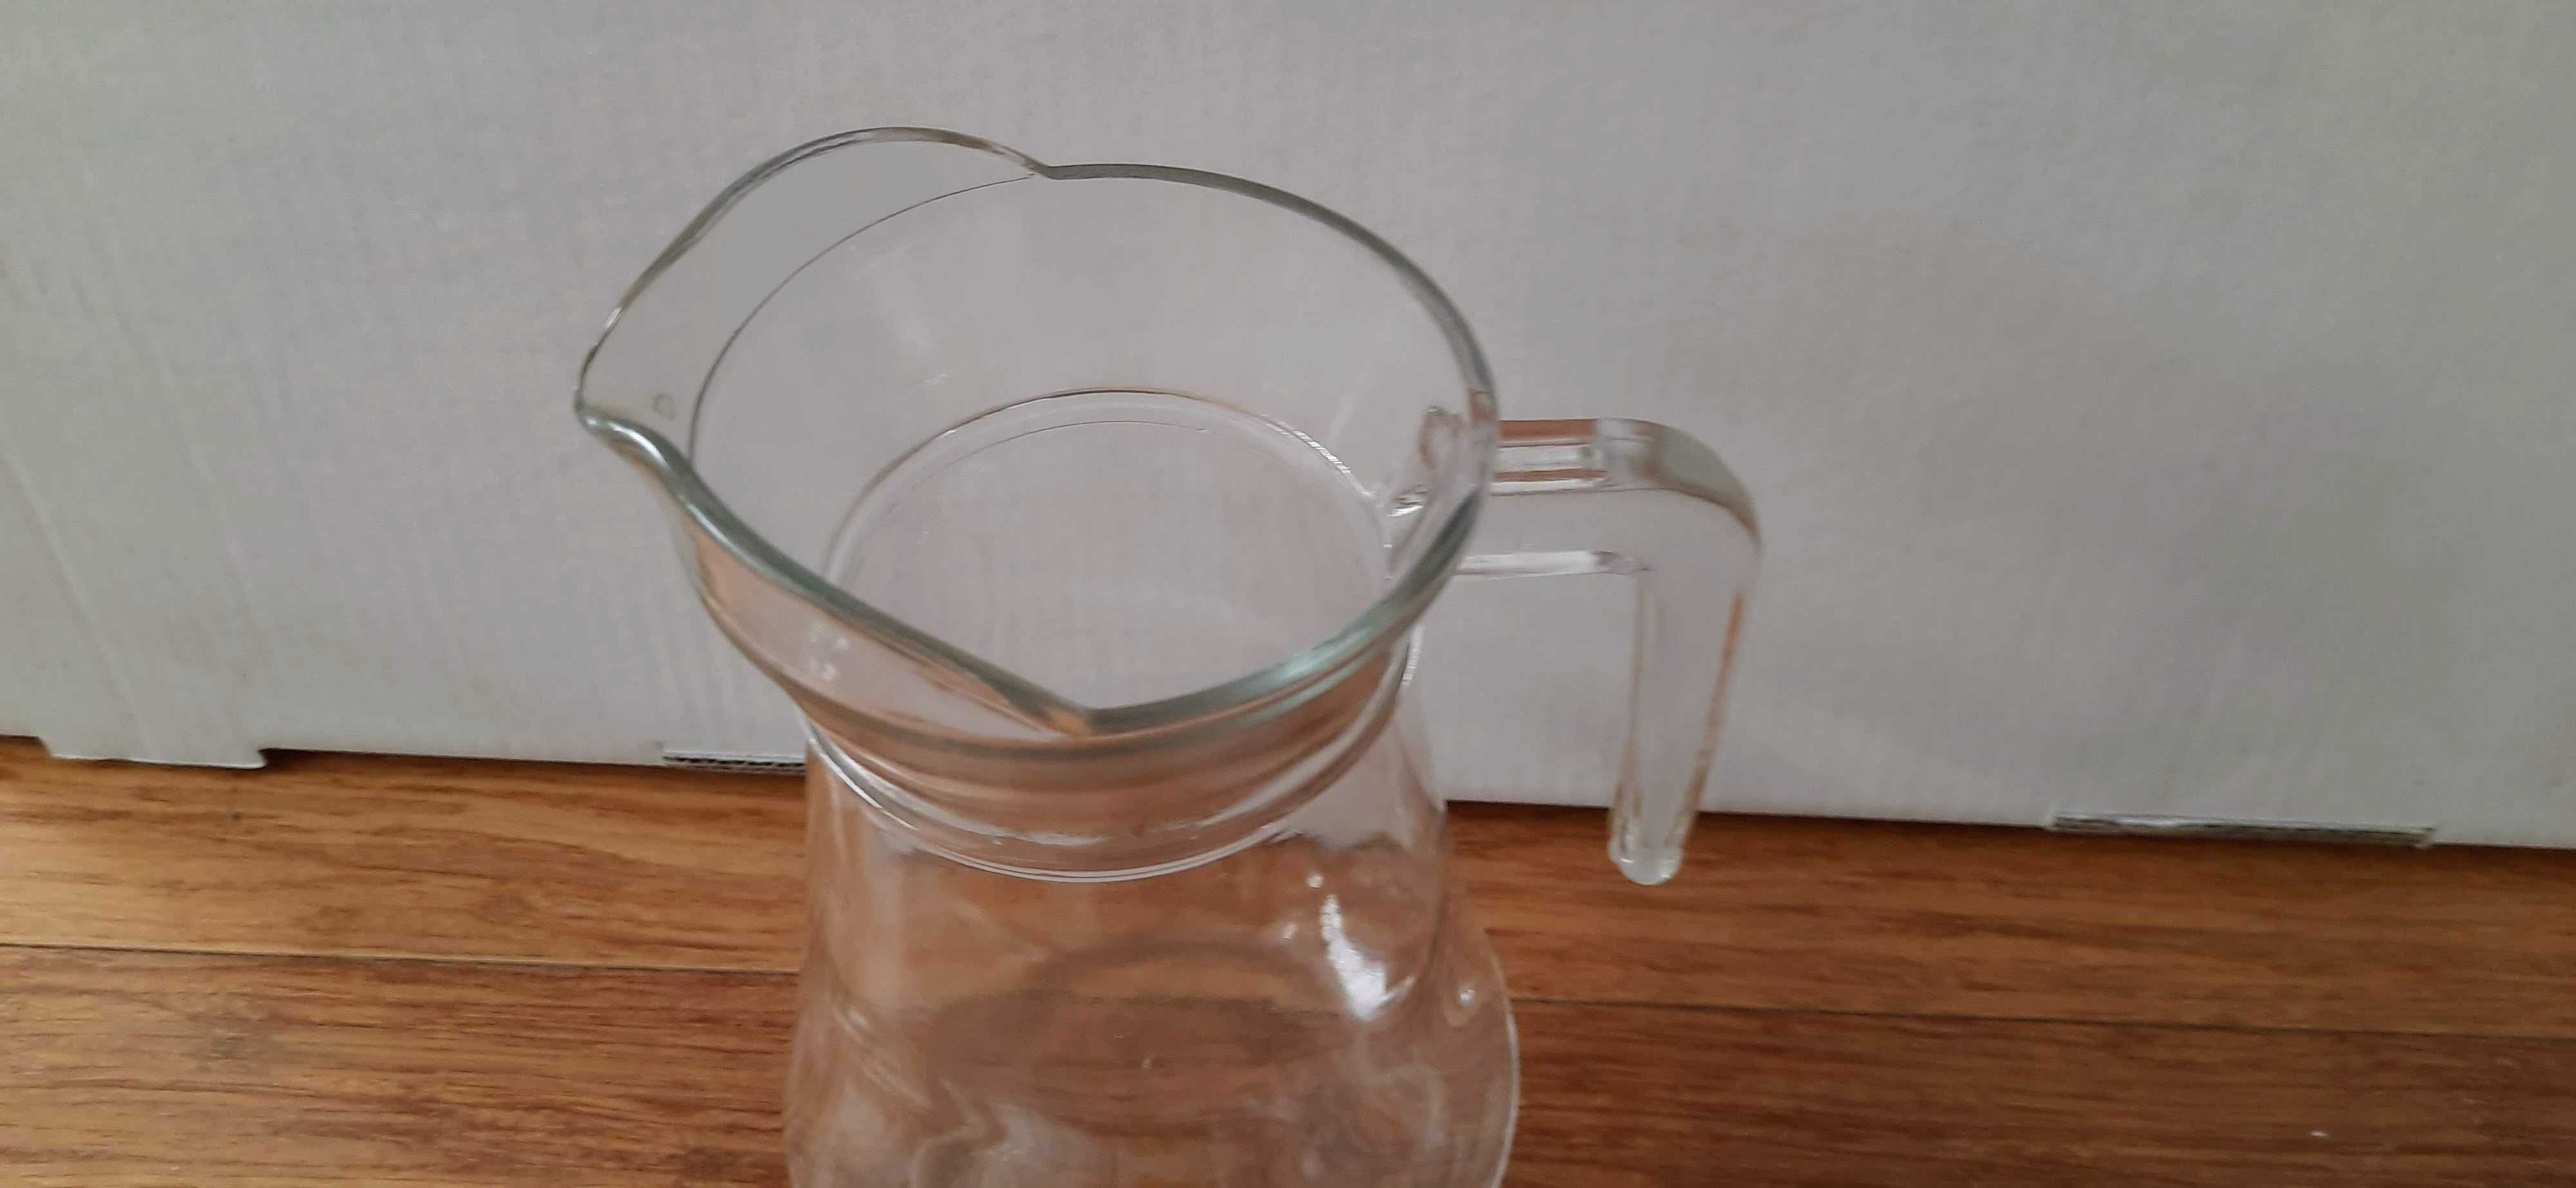 Szklany dzbanek na wodę, sok, lemoniadę 1,5 l